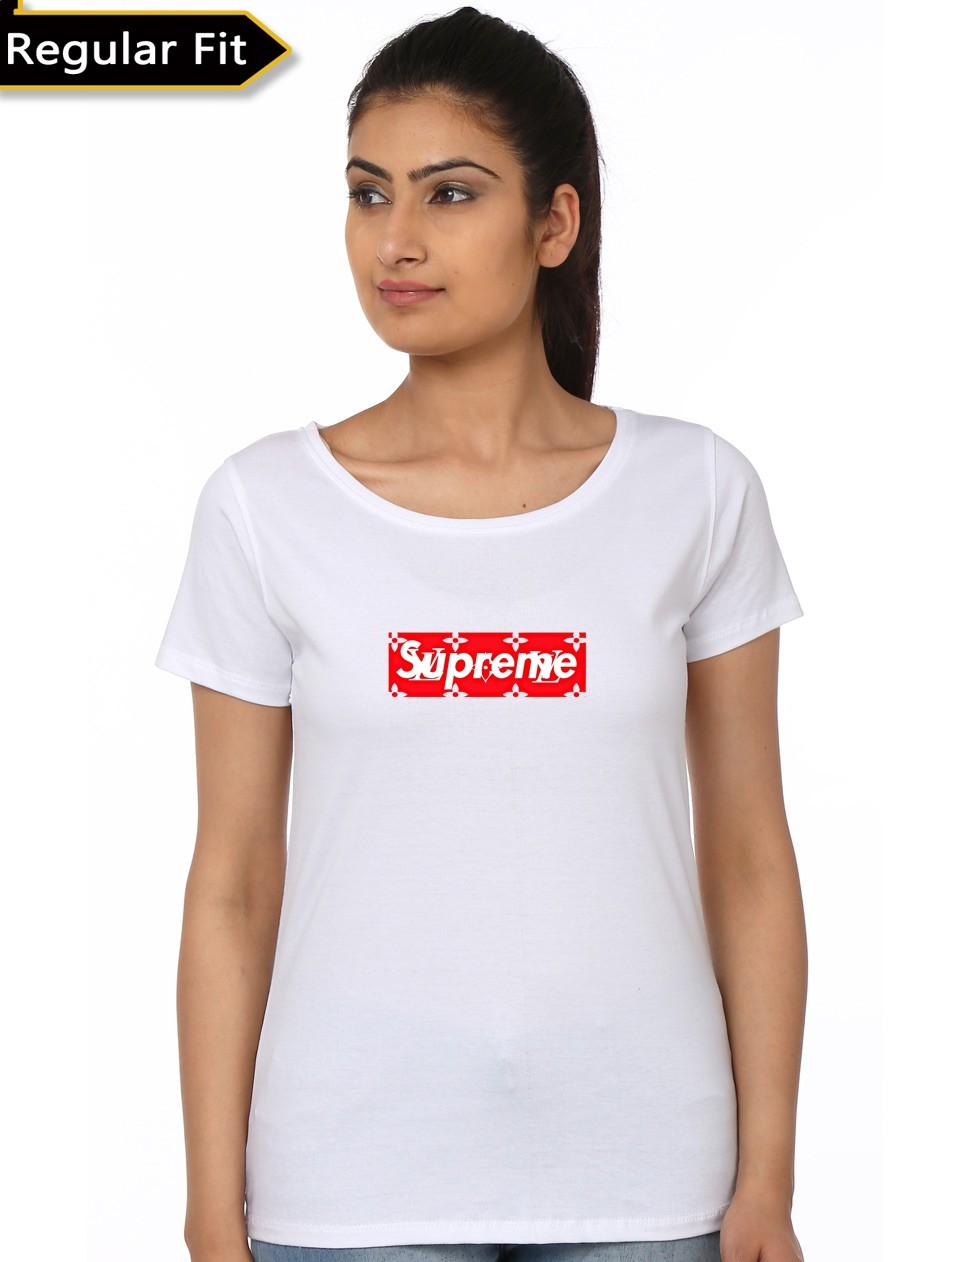 Supreme LV Girl's T-Shirt